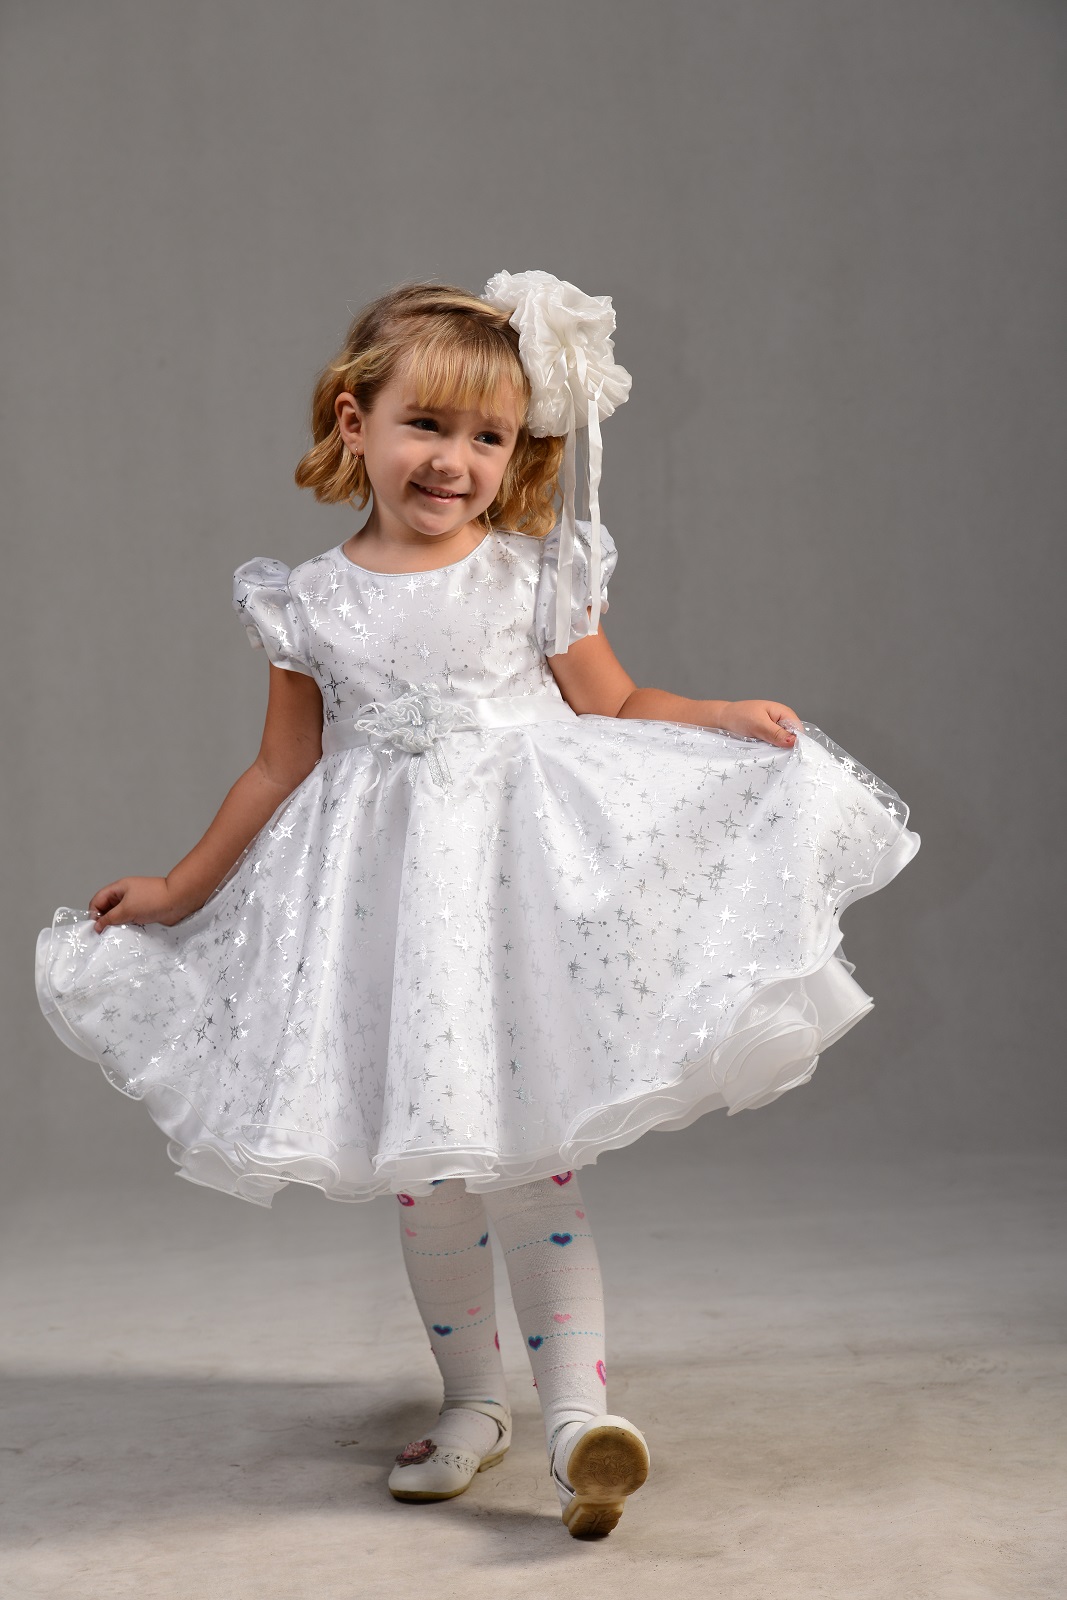 Белое платье для девочки Снежинка